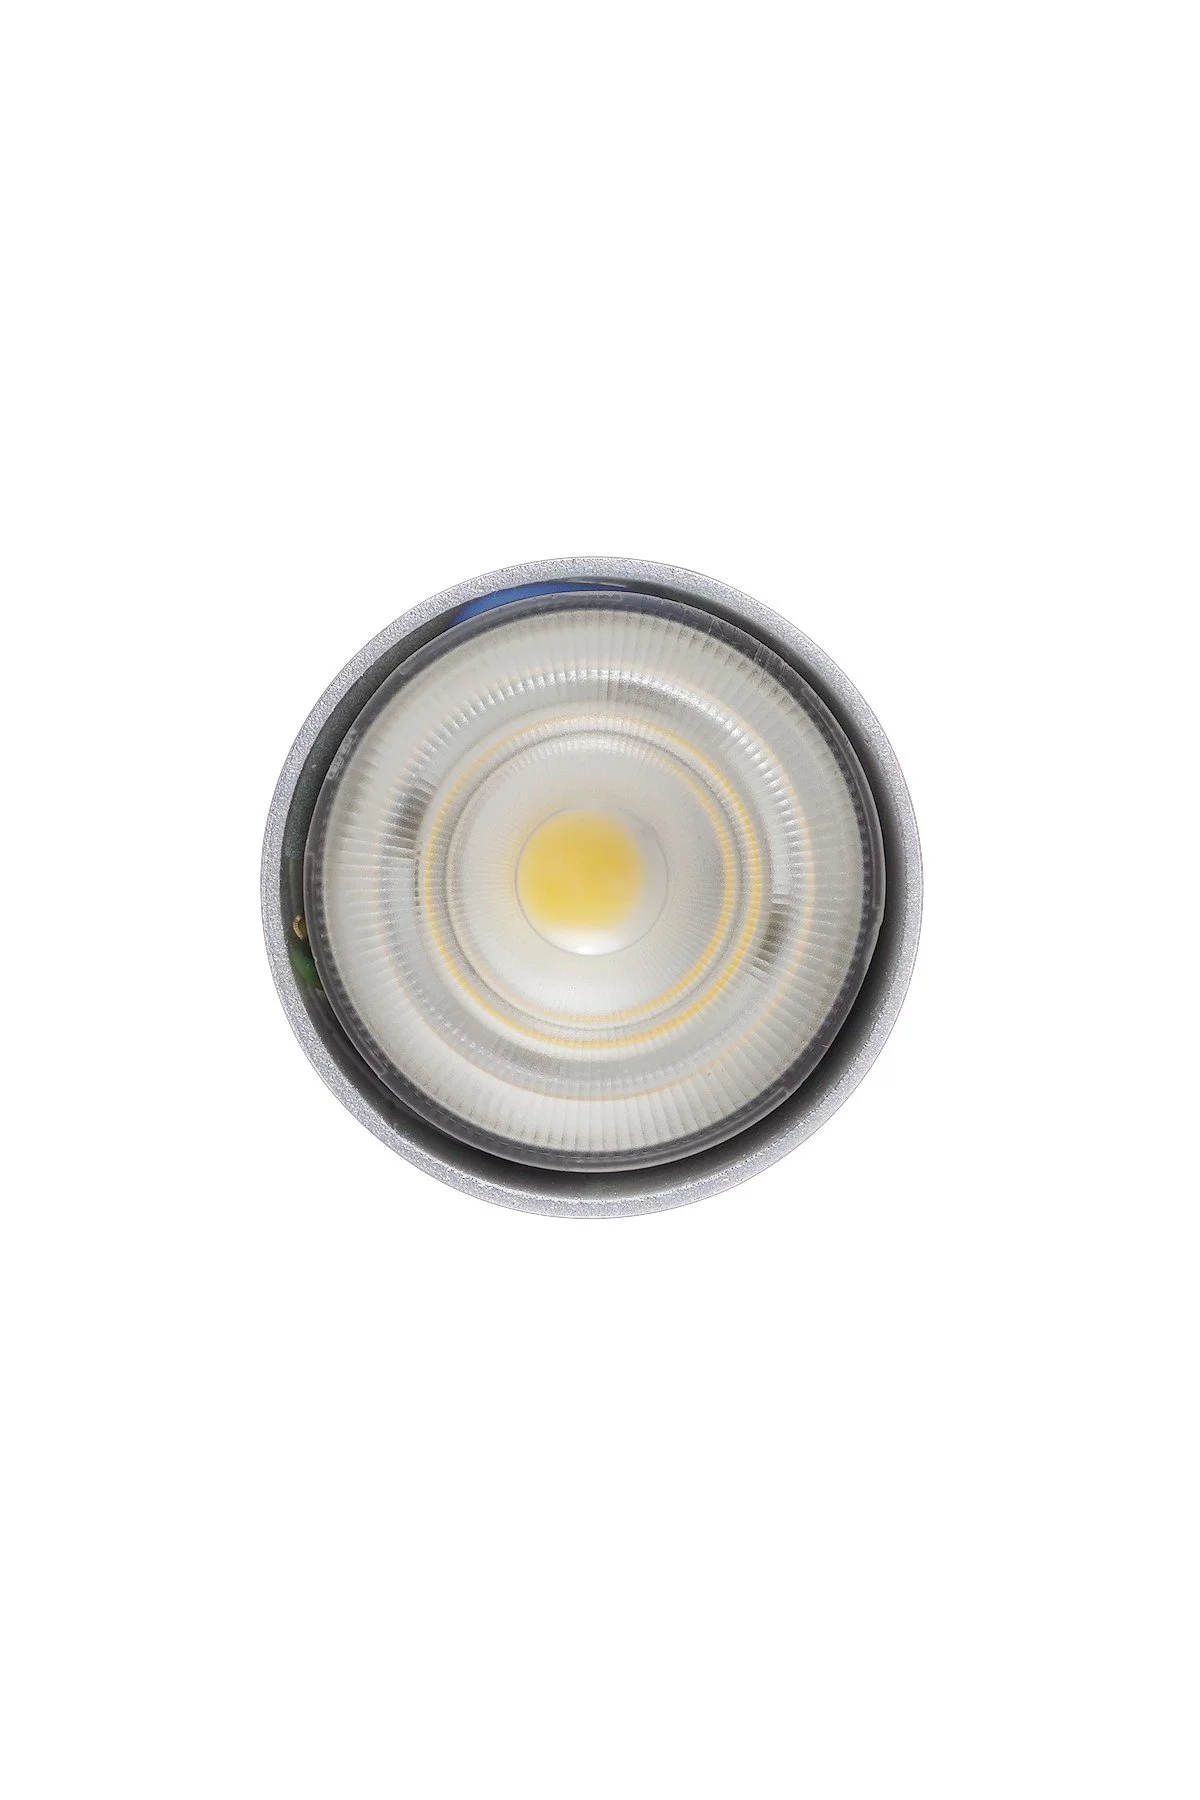   
                        Точковий світильник NB LIGHT (Україна) 28607    
                         у стилі модерн.  
                                                Форма: коло.                                                                          фото 2